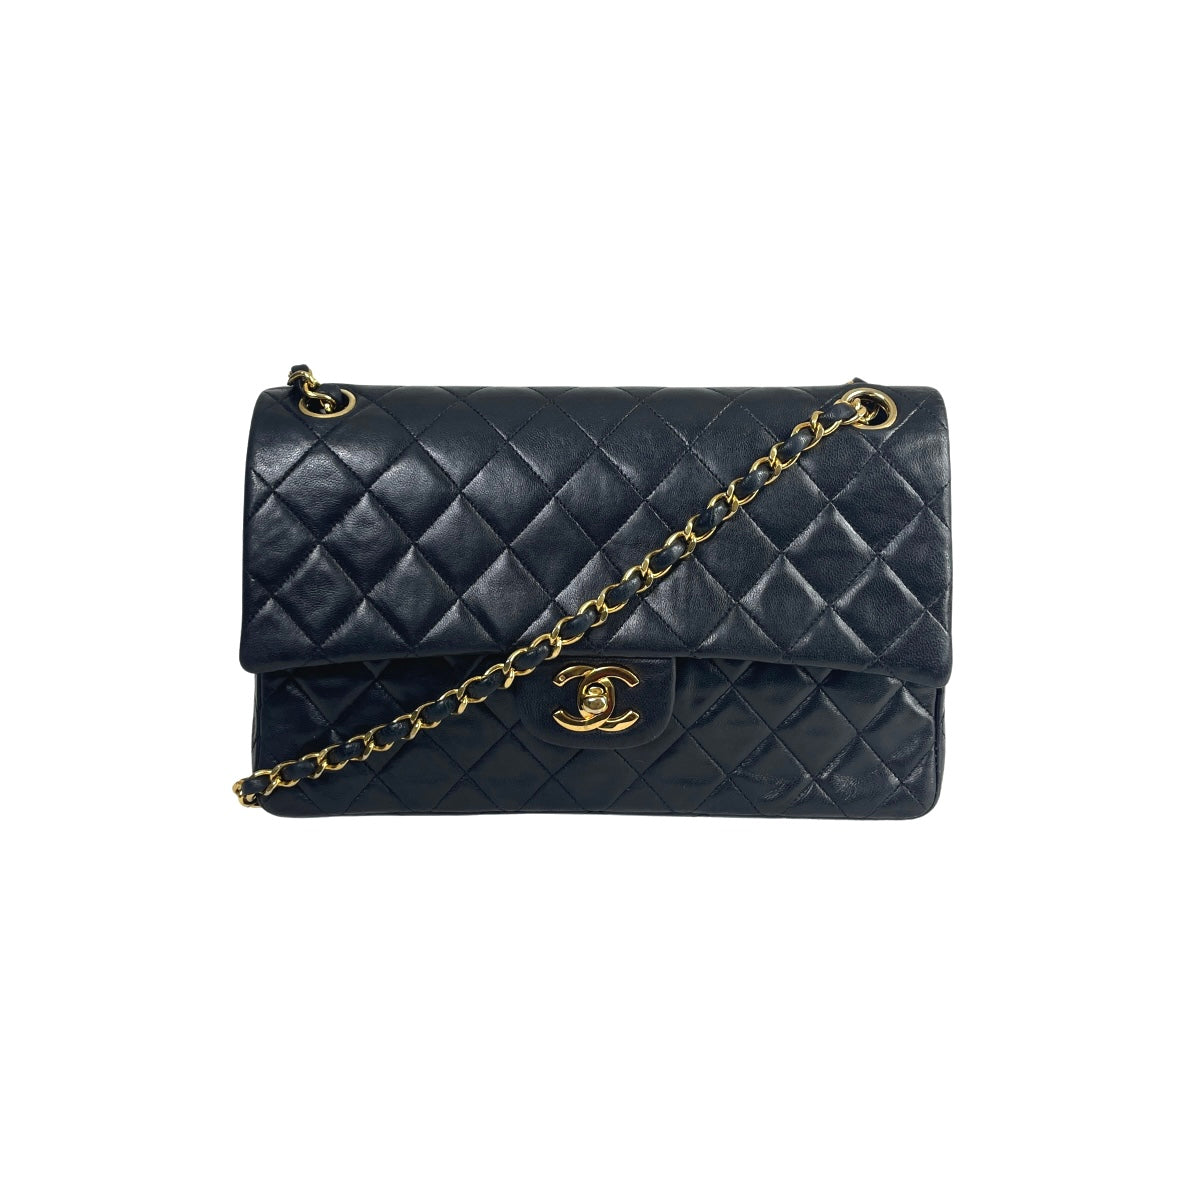 Chanel Flap Bag Medium Lambskin Leather de Saint Honoré